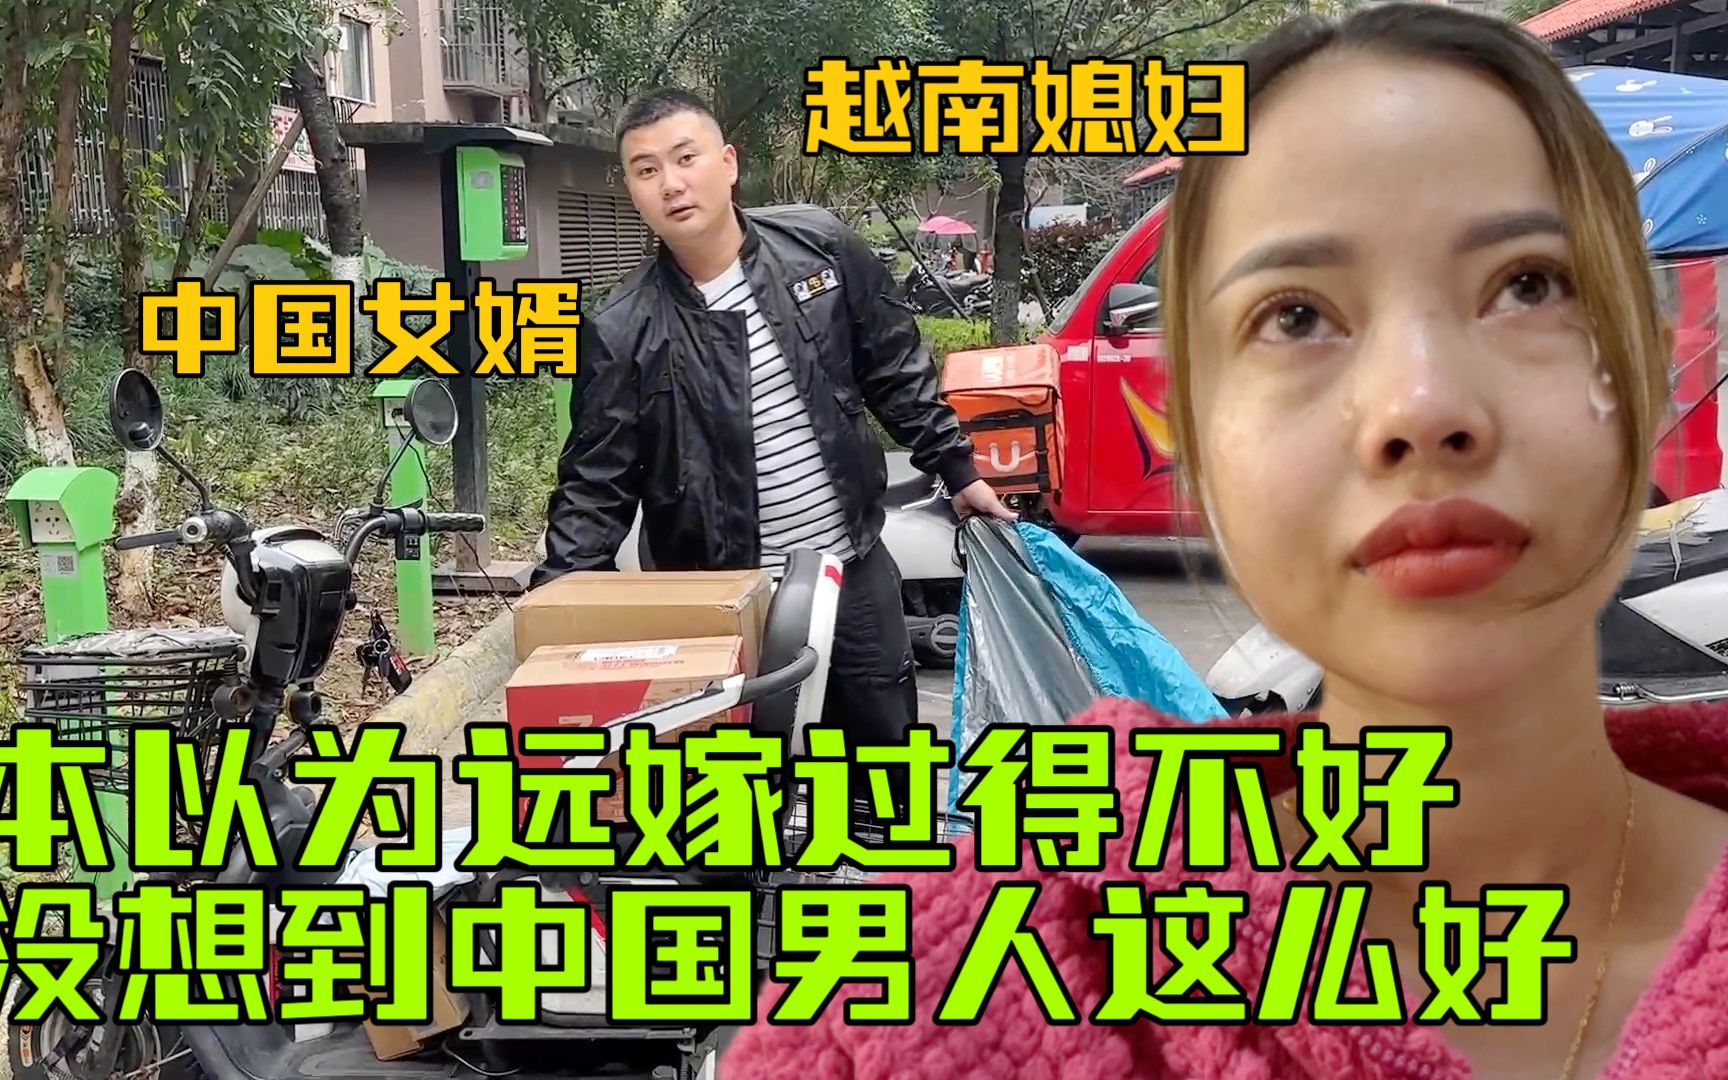 越南媳妇在中国过双11,老公直接清空购物车:把媳妇整破防了!